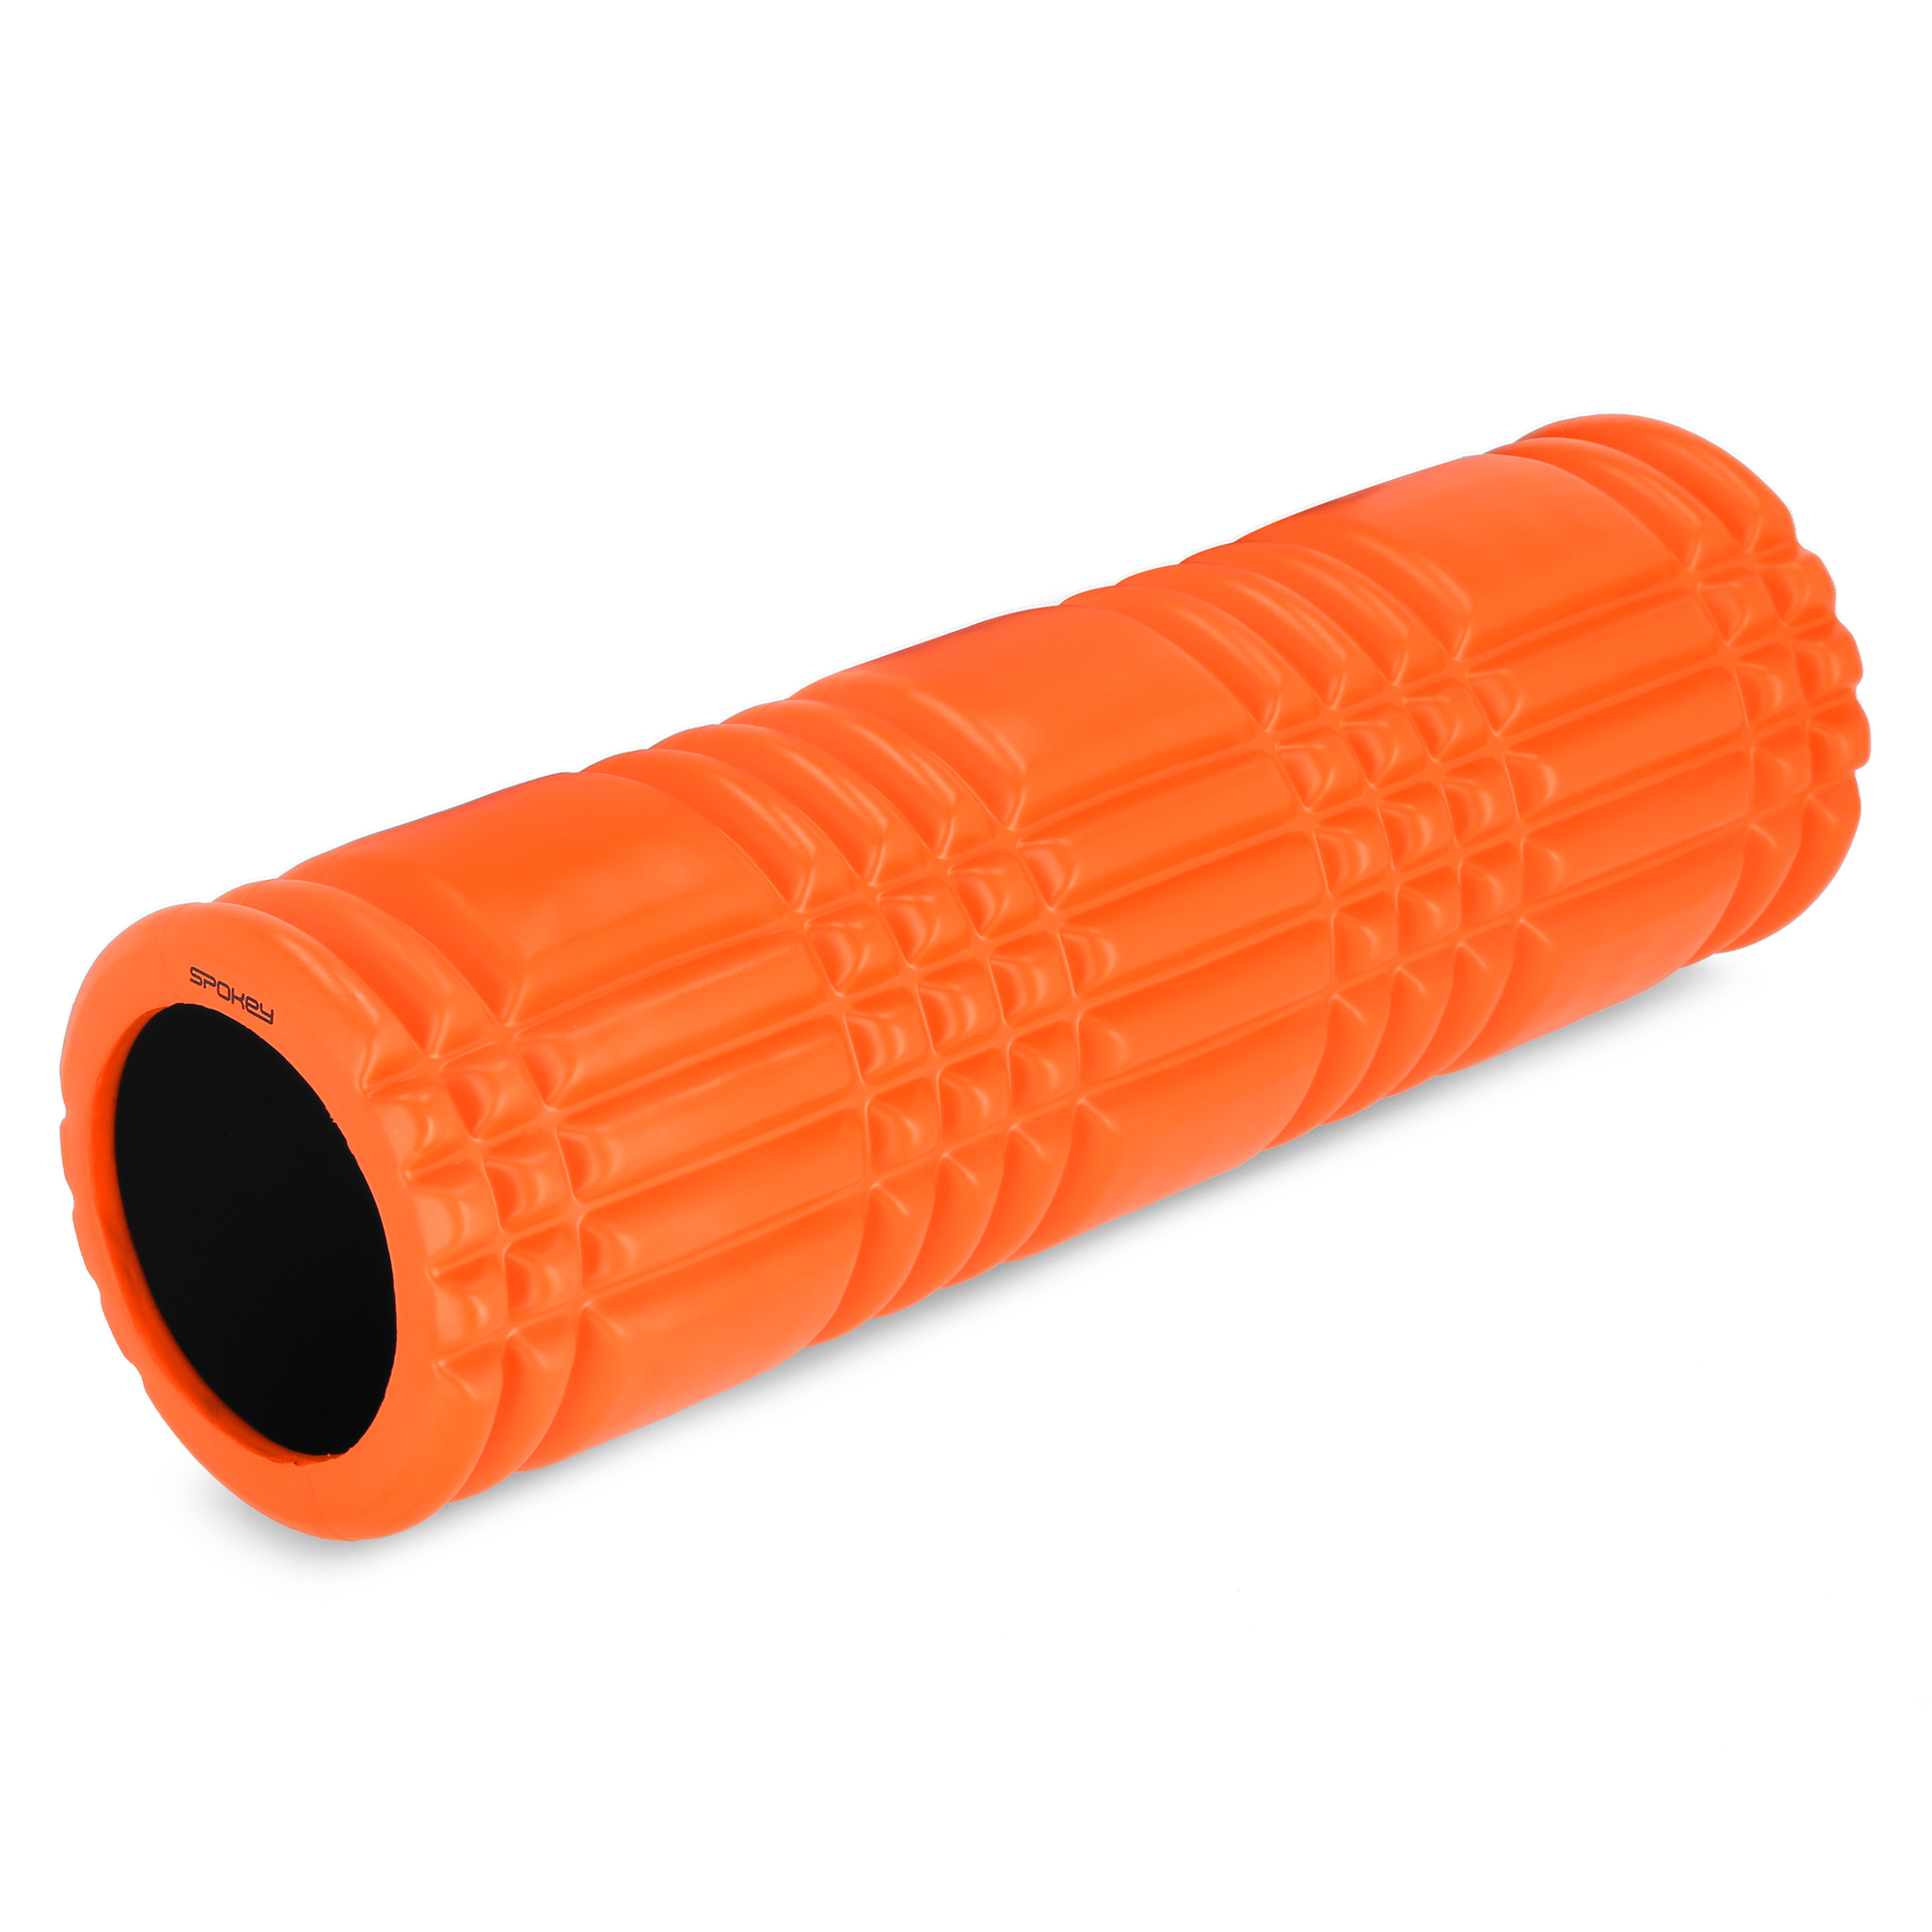 Wałek fitness roller pomarańczowy Spokey MIXROLL 1